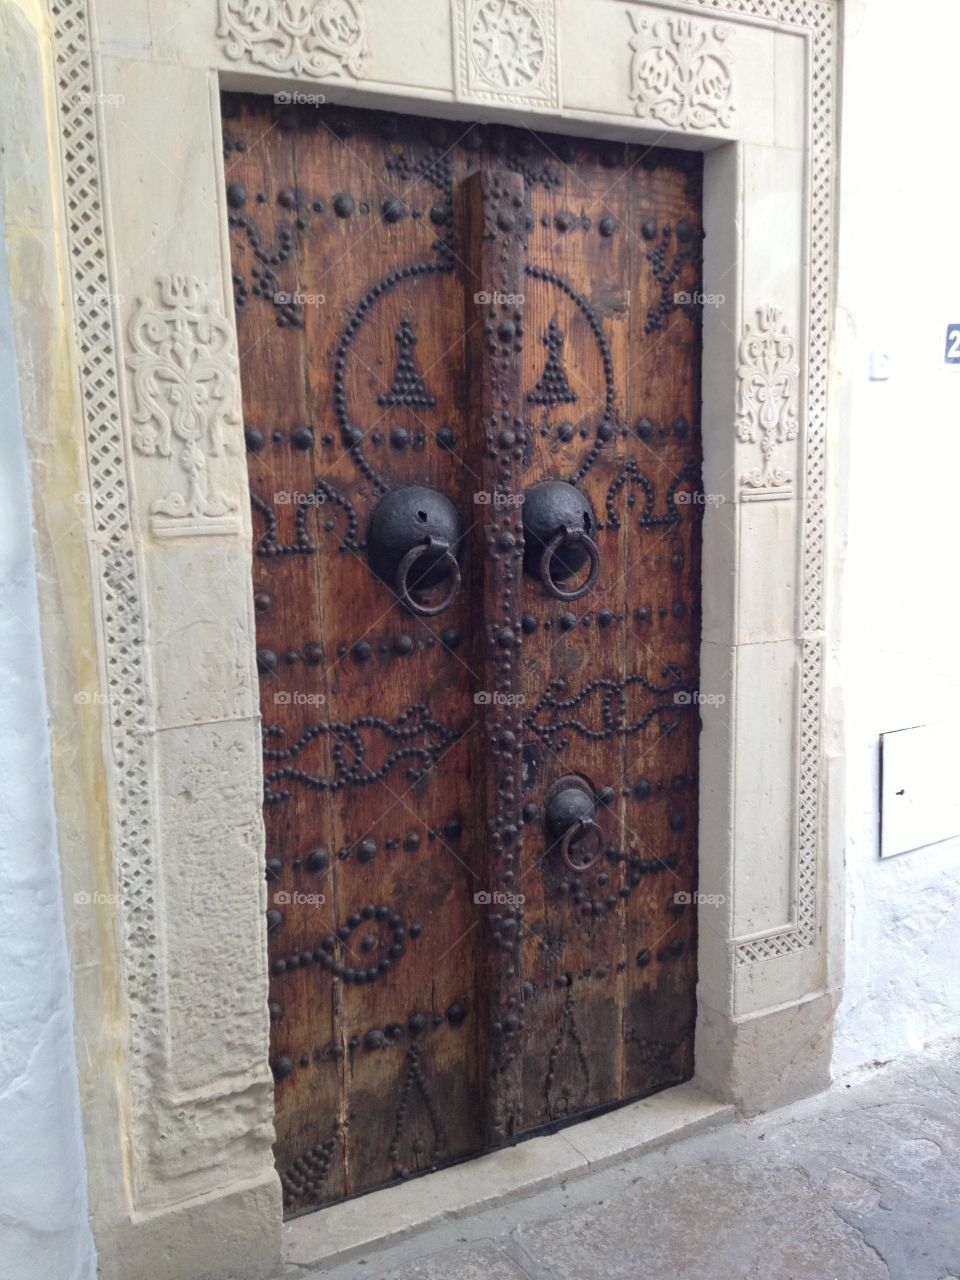 Doors in Tunisien